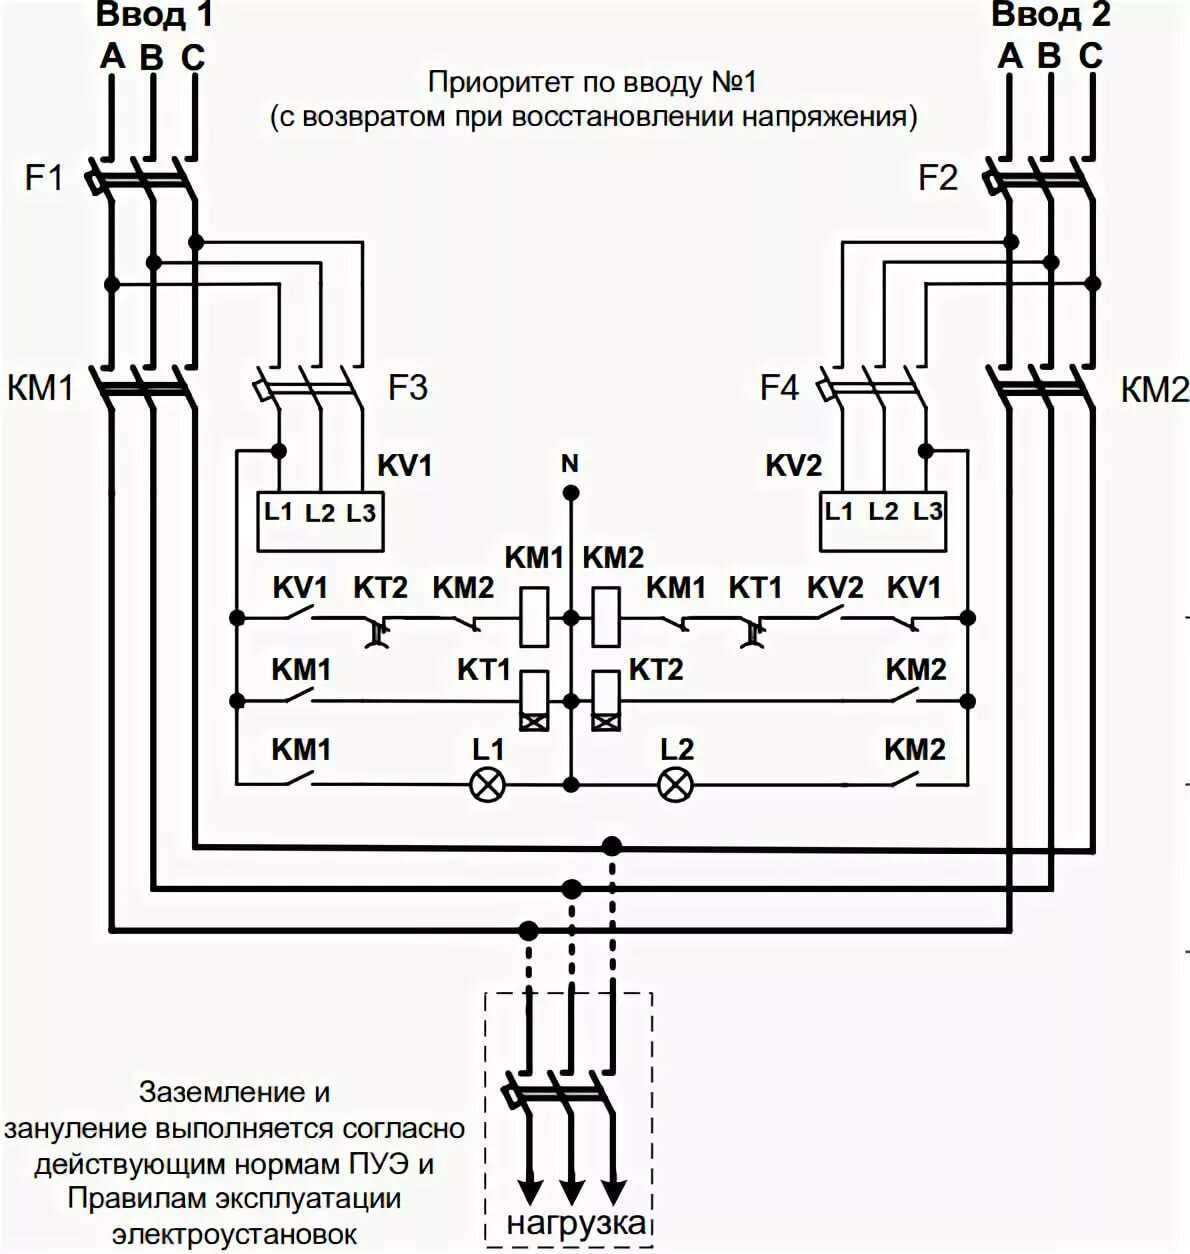 Авр автоматический ввод резерва: что такое и как работает » электротехнологии в иркутске